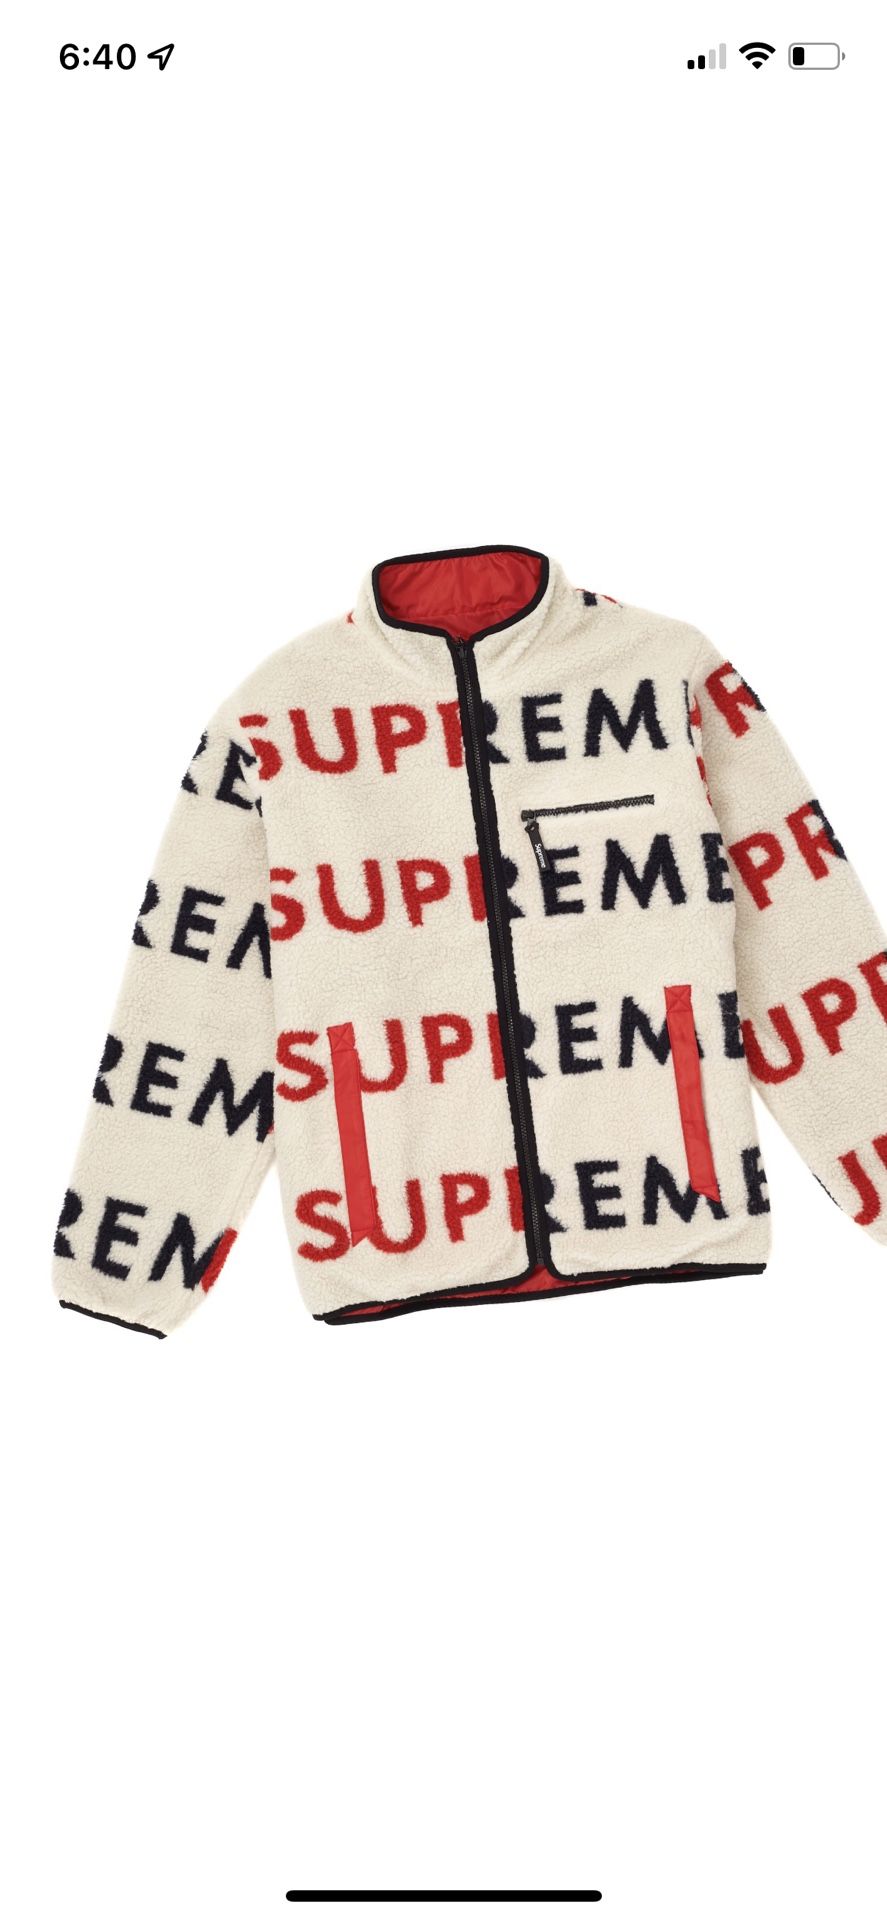 Supreme Reversible Fleece Jacket